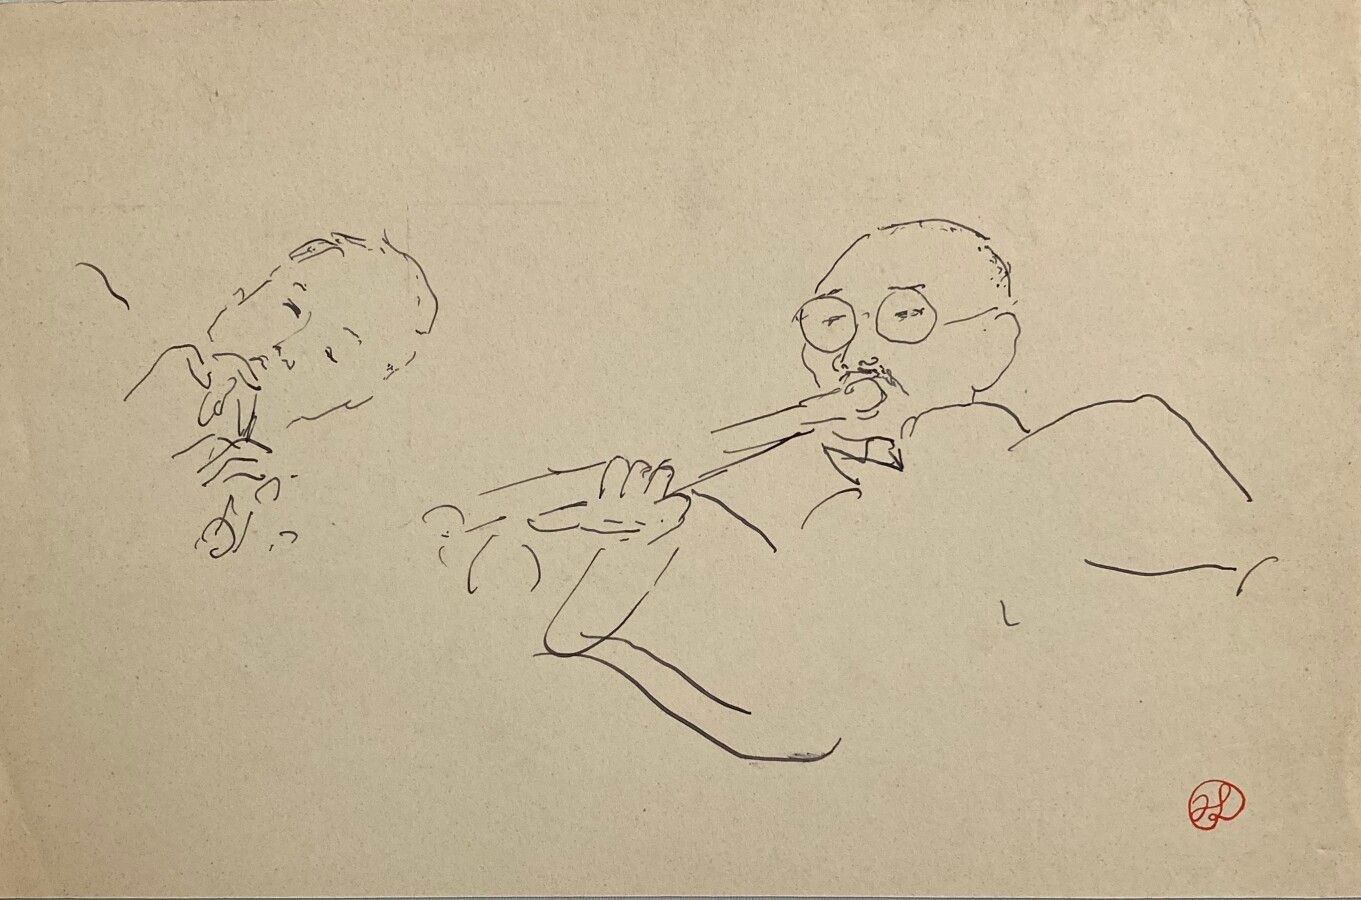 Null 让-朗努瓦(Jean LAUNOIS) (1898-1942)

亚洲音乐人

水墨画，右下角盖有单字

20.8 x 31.5厘米